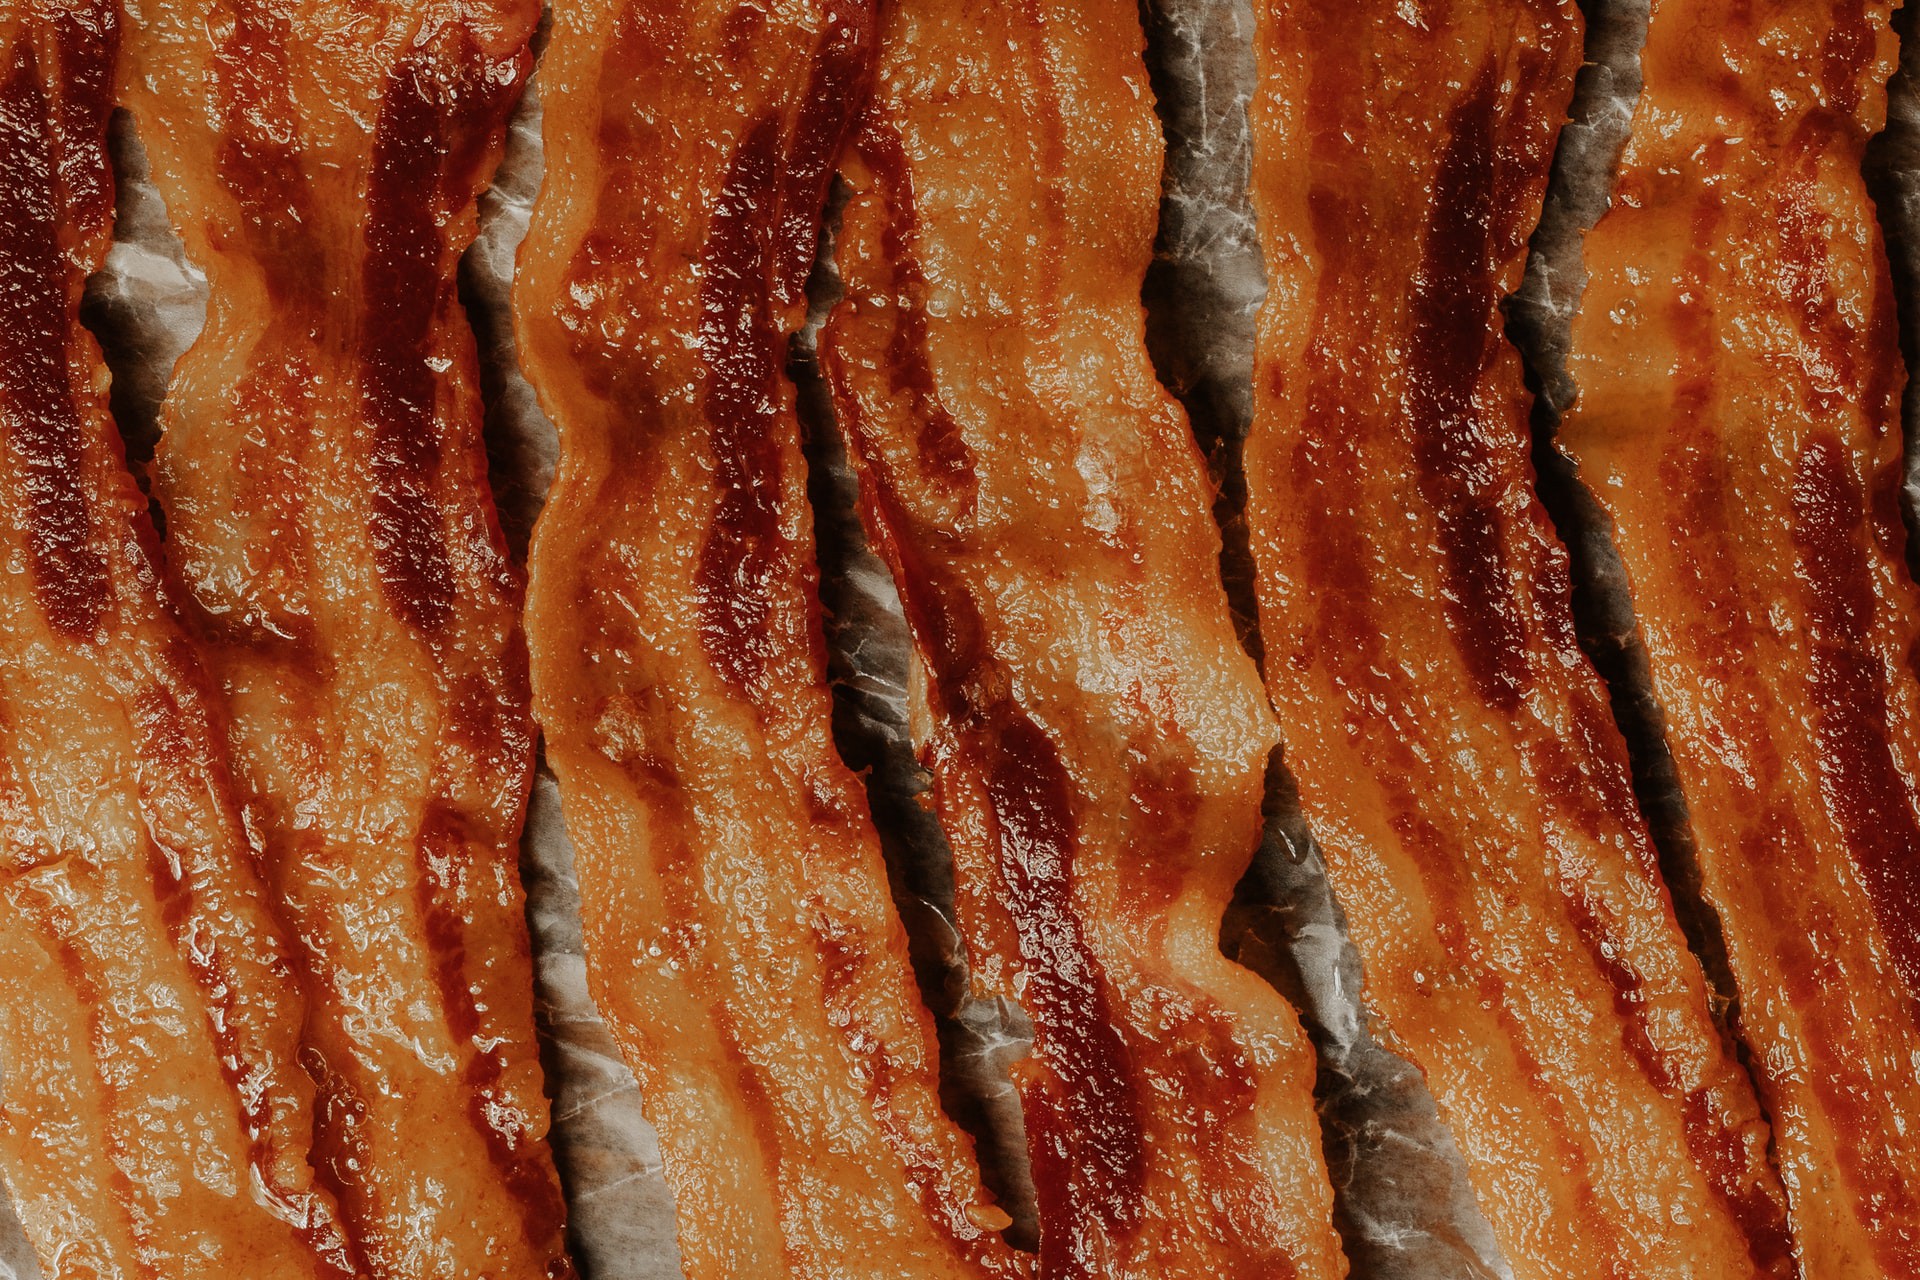 Bacon la cuptor în 5 pași simpli